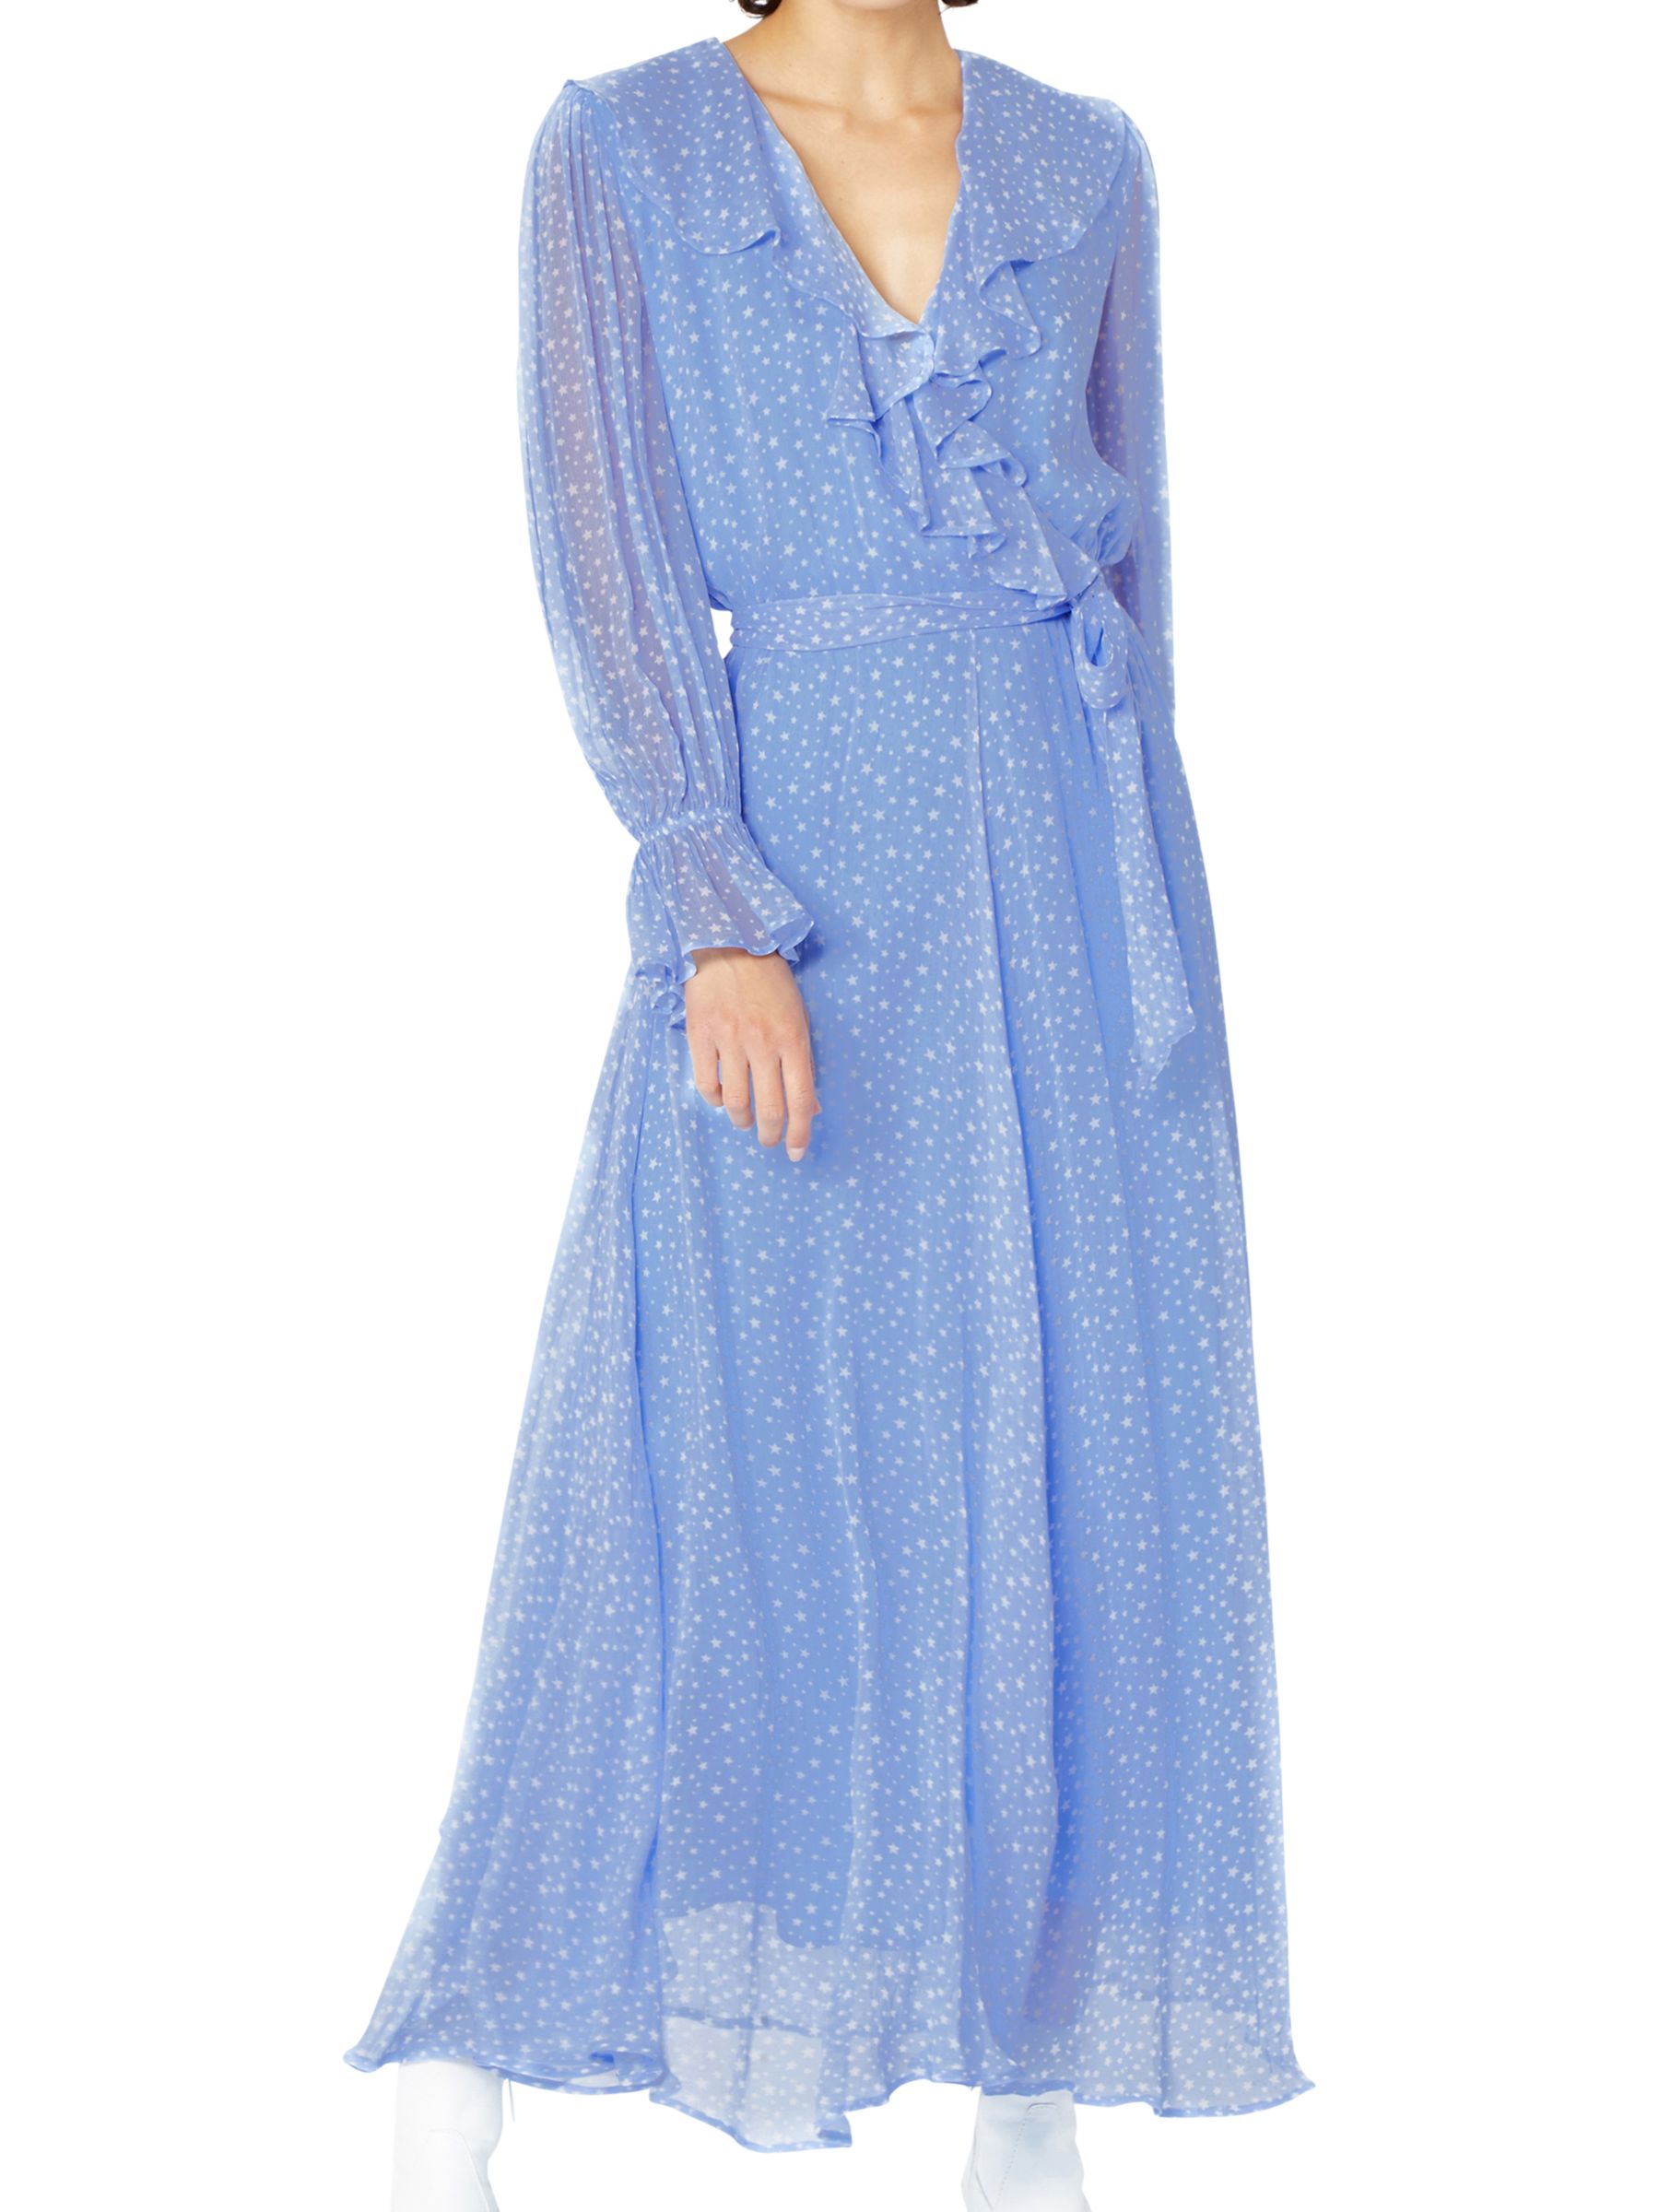 Ghost Su Star Print Dress, Blue